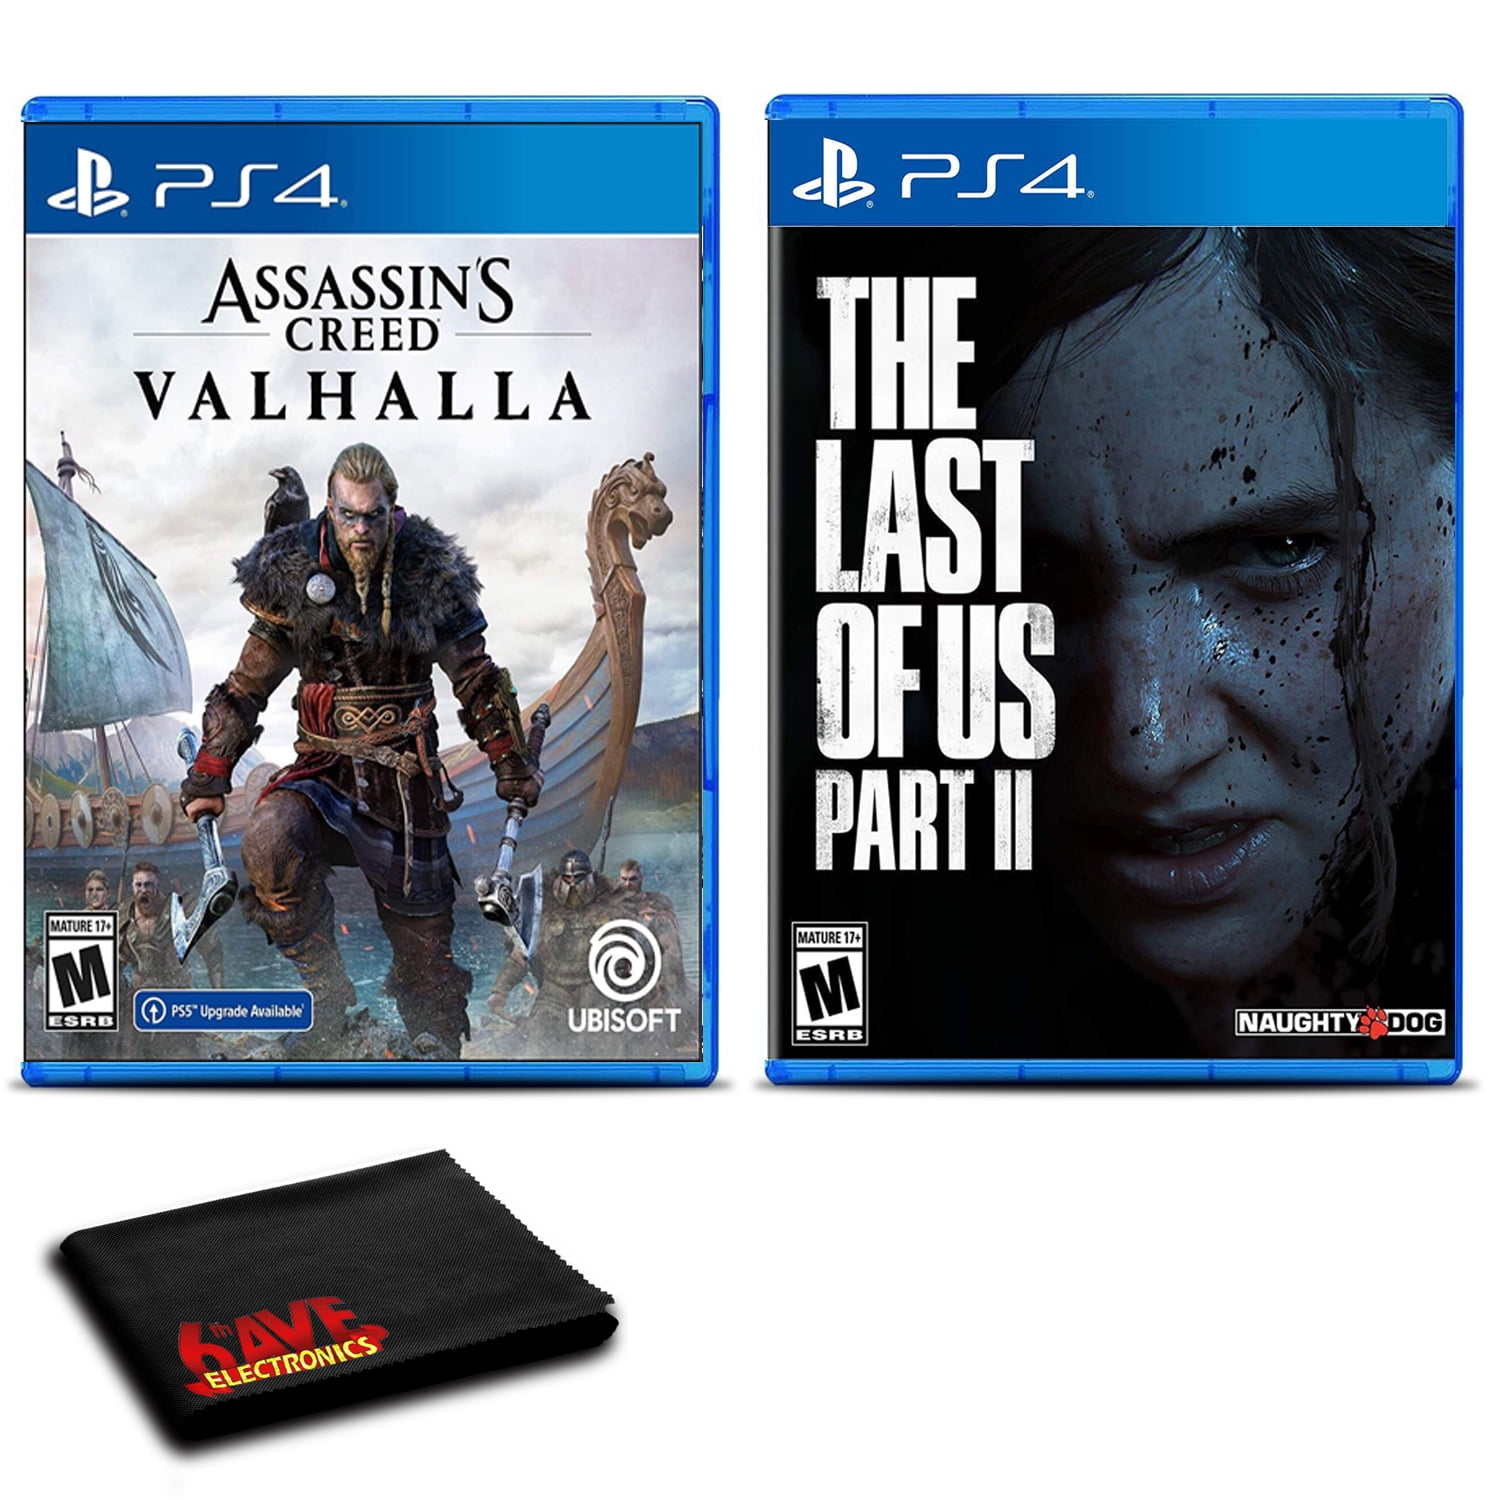 Assassin's Creed Valhalla - PS4 | PlayStation 4 | GameStop